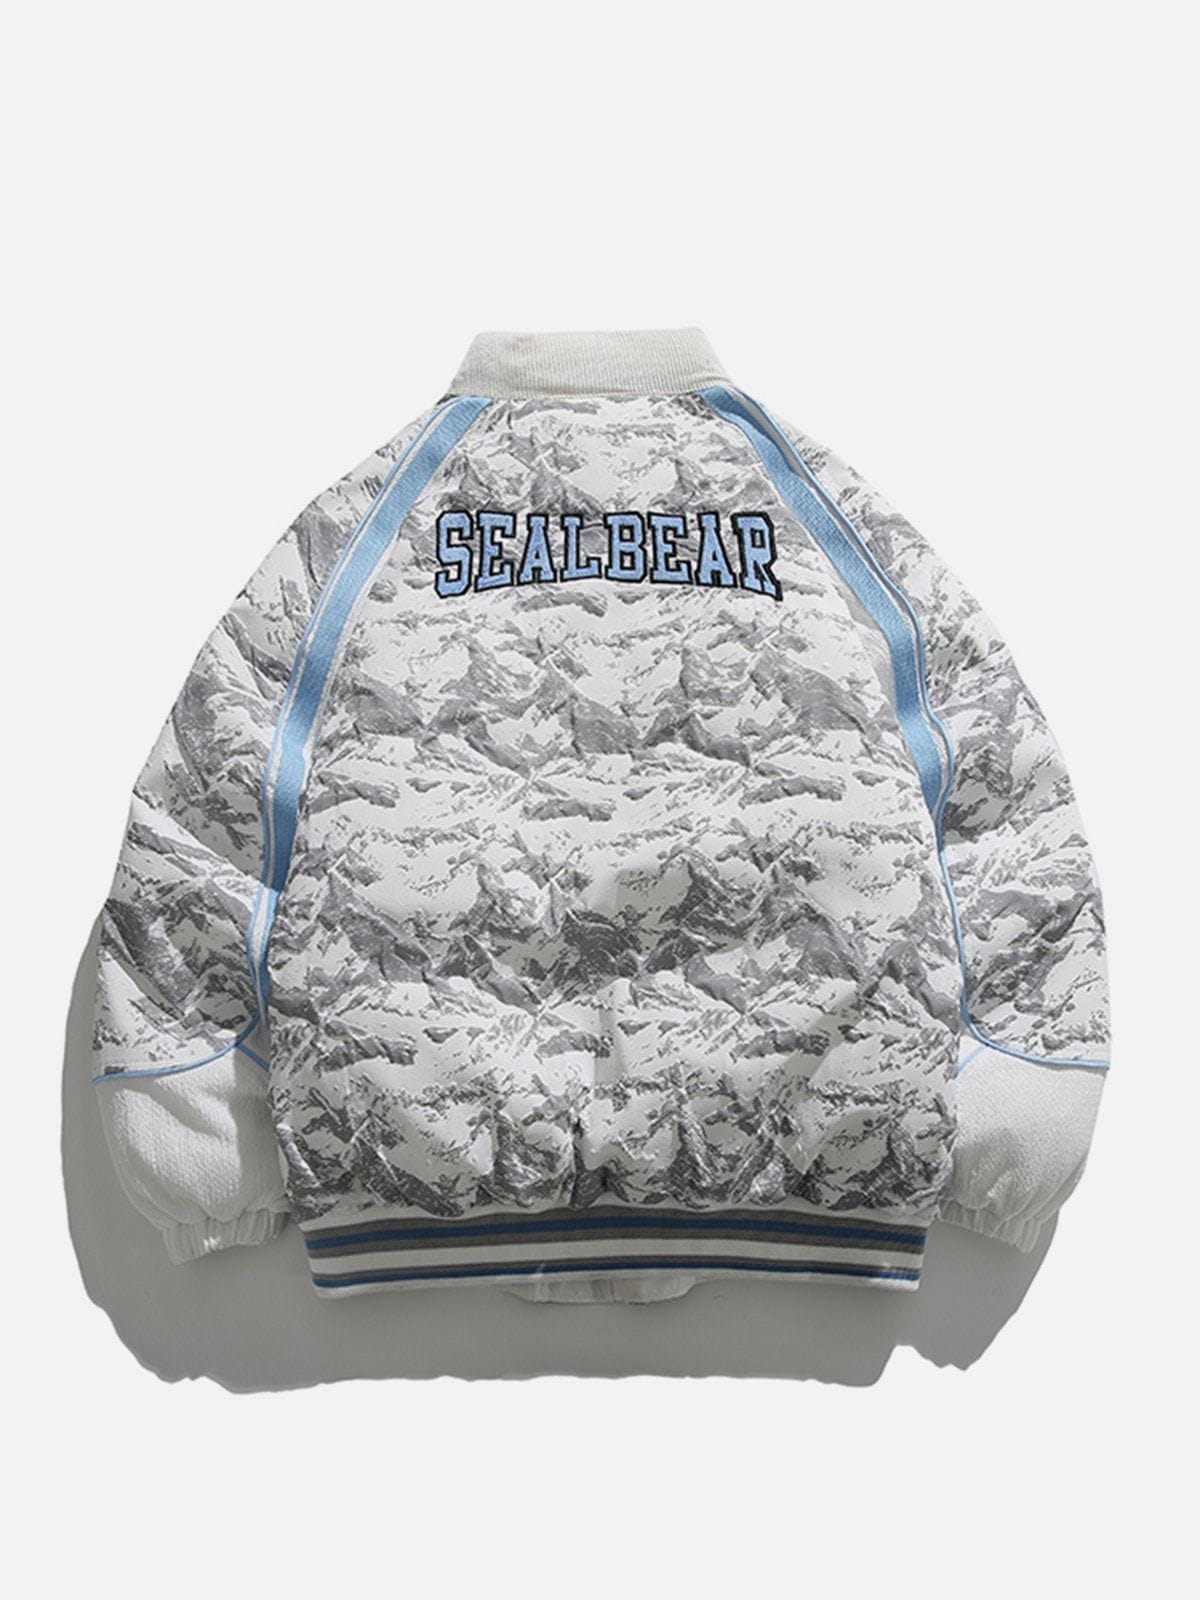 Sneakerland™ - Webbing Patchwork Winter Coat